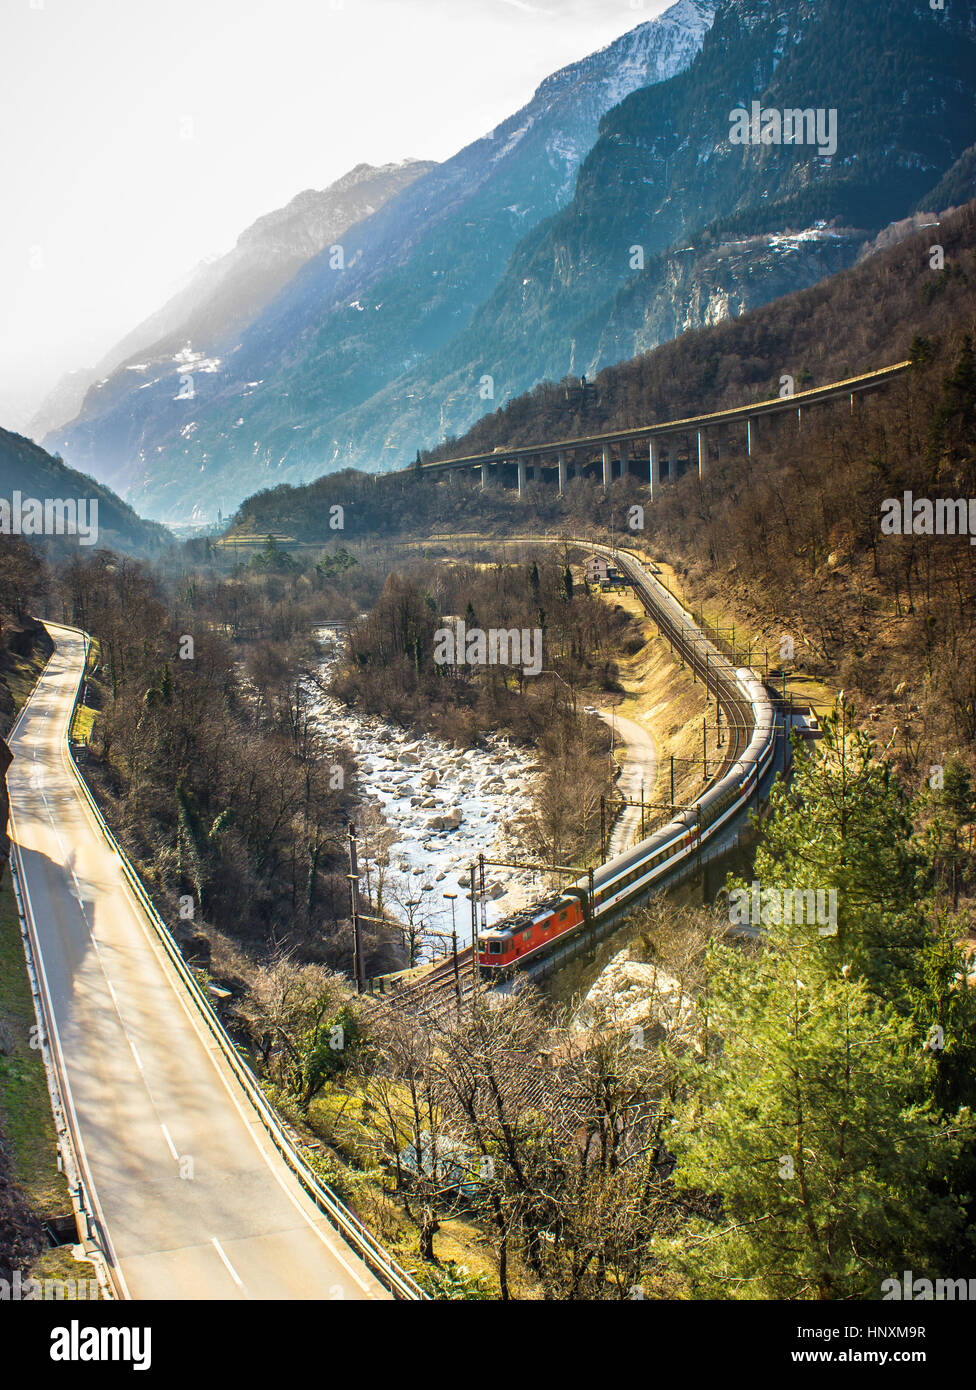 Paysage suisse typique, les vallées entre les montagnes, la neige et les trains Banque D'Images